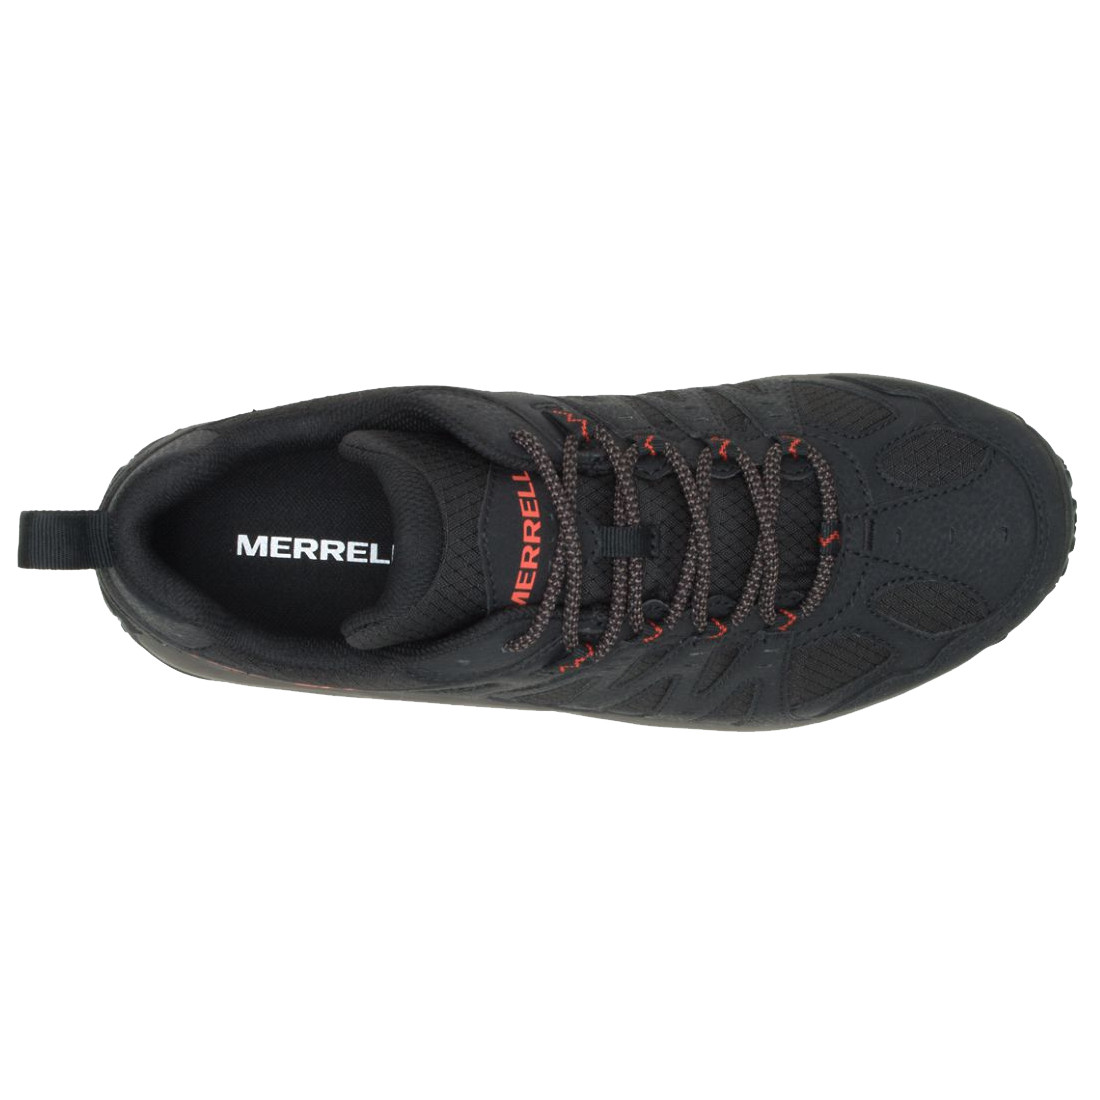 Zapatillas Merrell Accentor 3 Sport Gtx Hombre Black. Oferta y